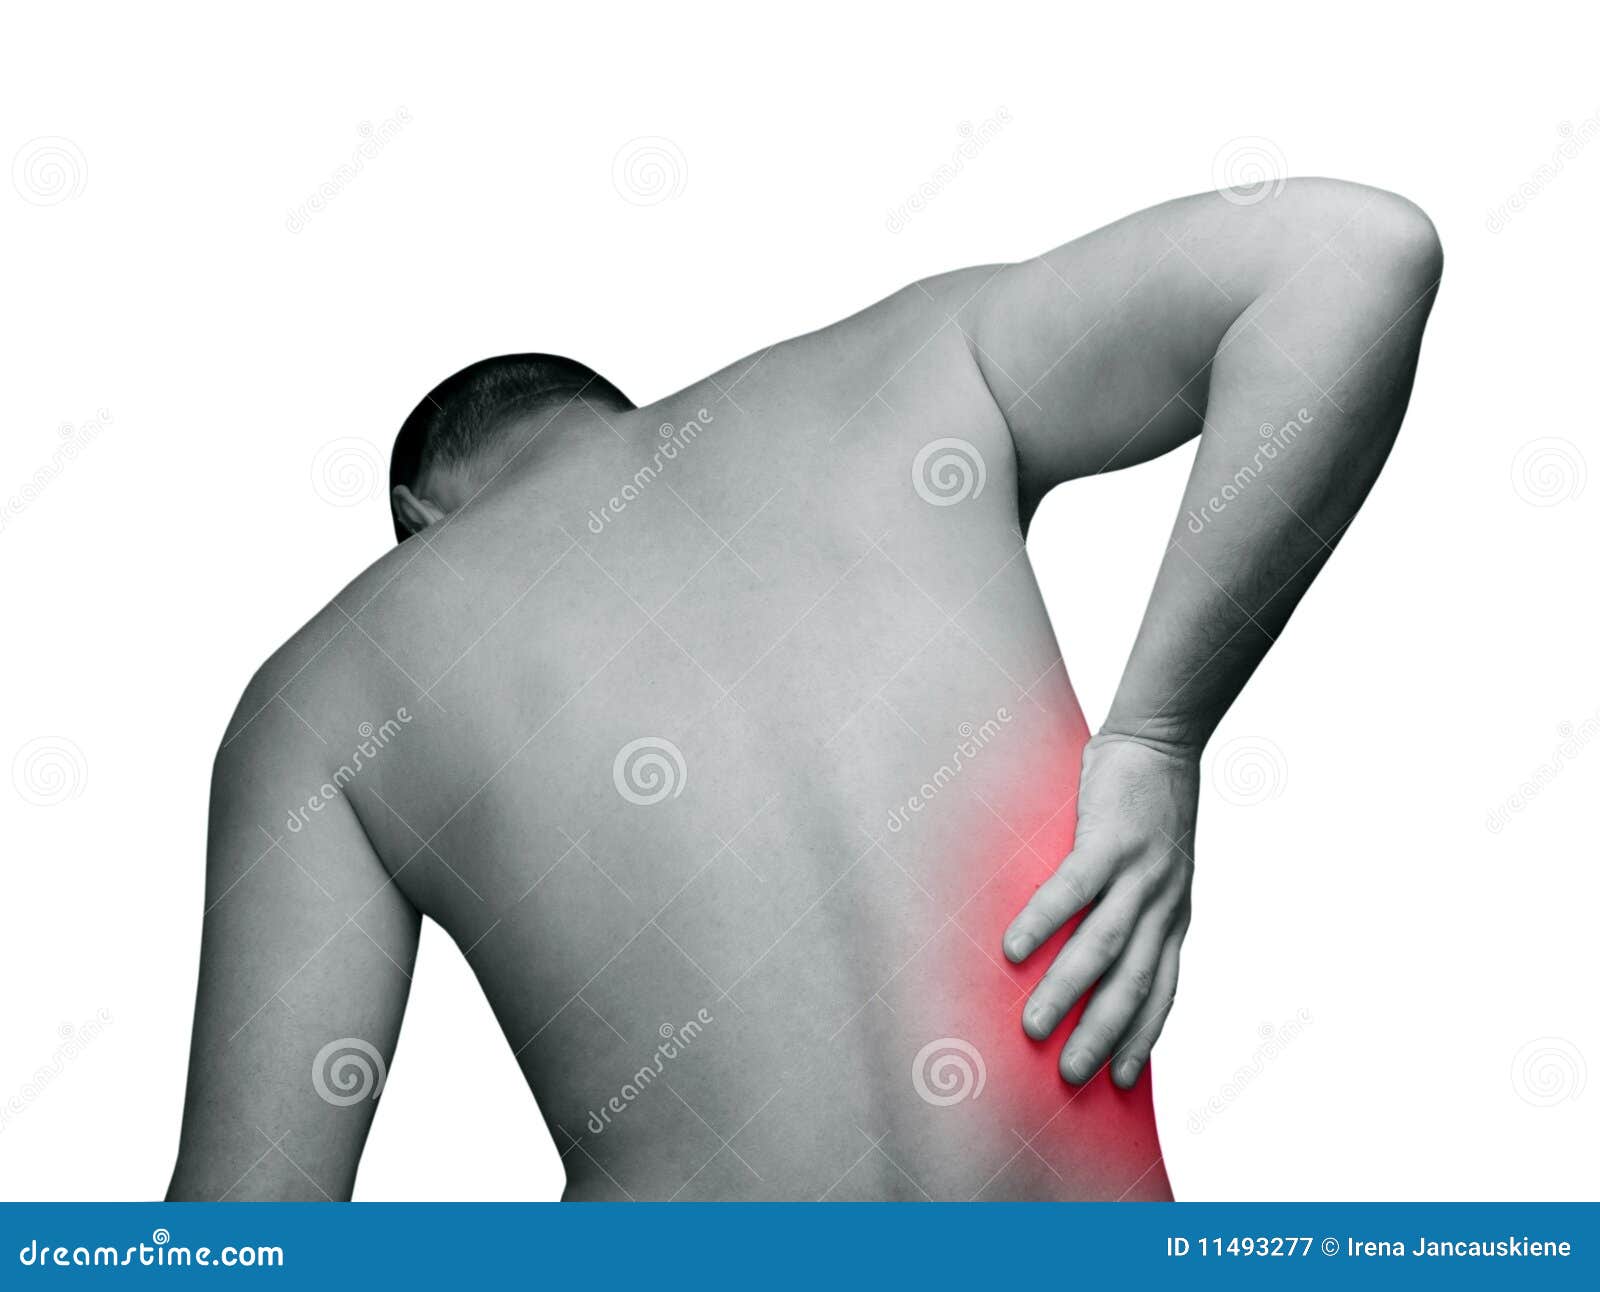 Болит спина отдает в ребра справа. Боль в спине. Боль в спине справа. Болит спина справа под ребрами. Боль в спине справа под ребрами.